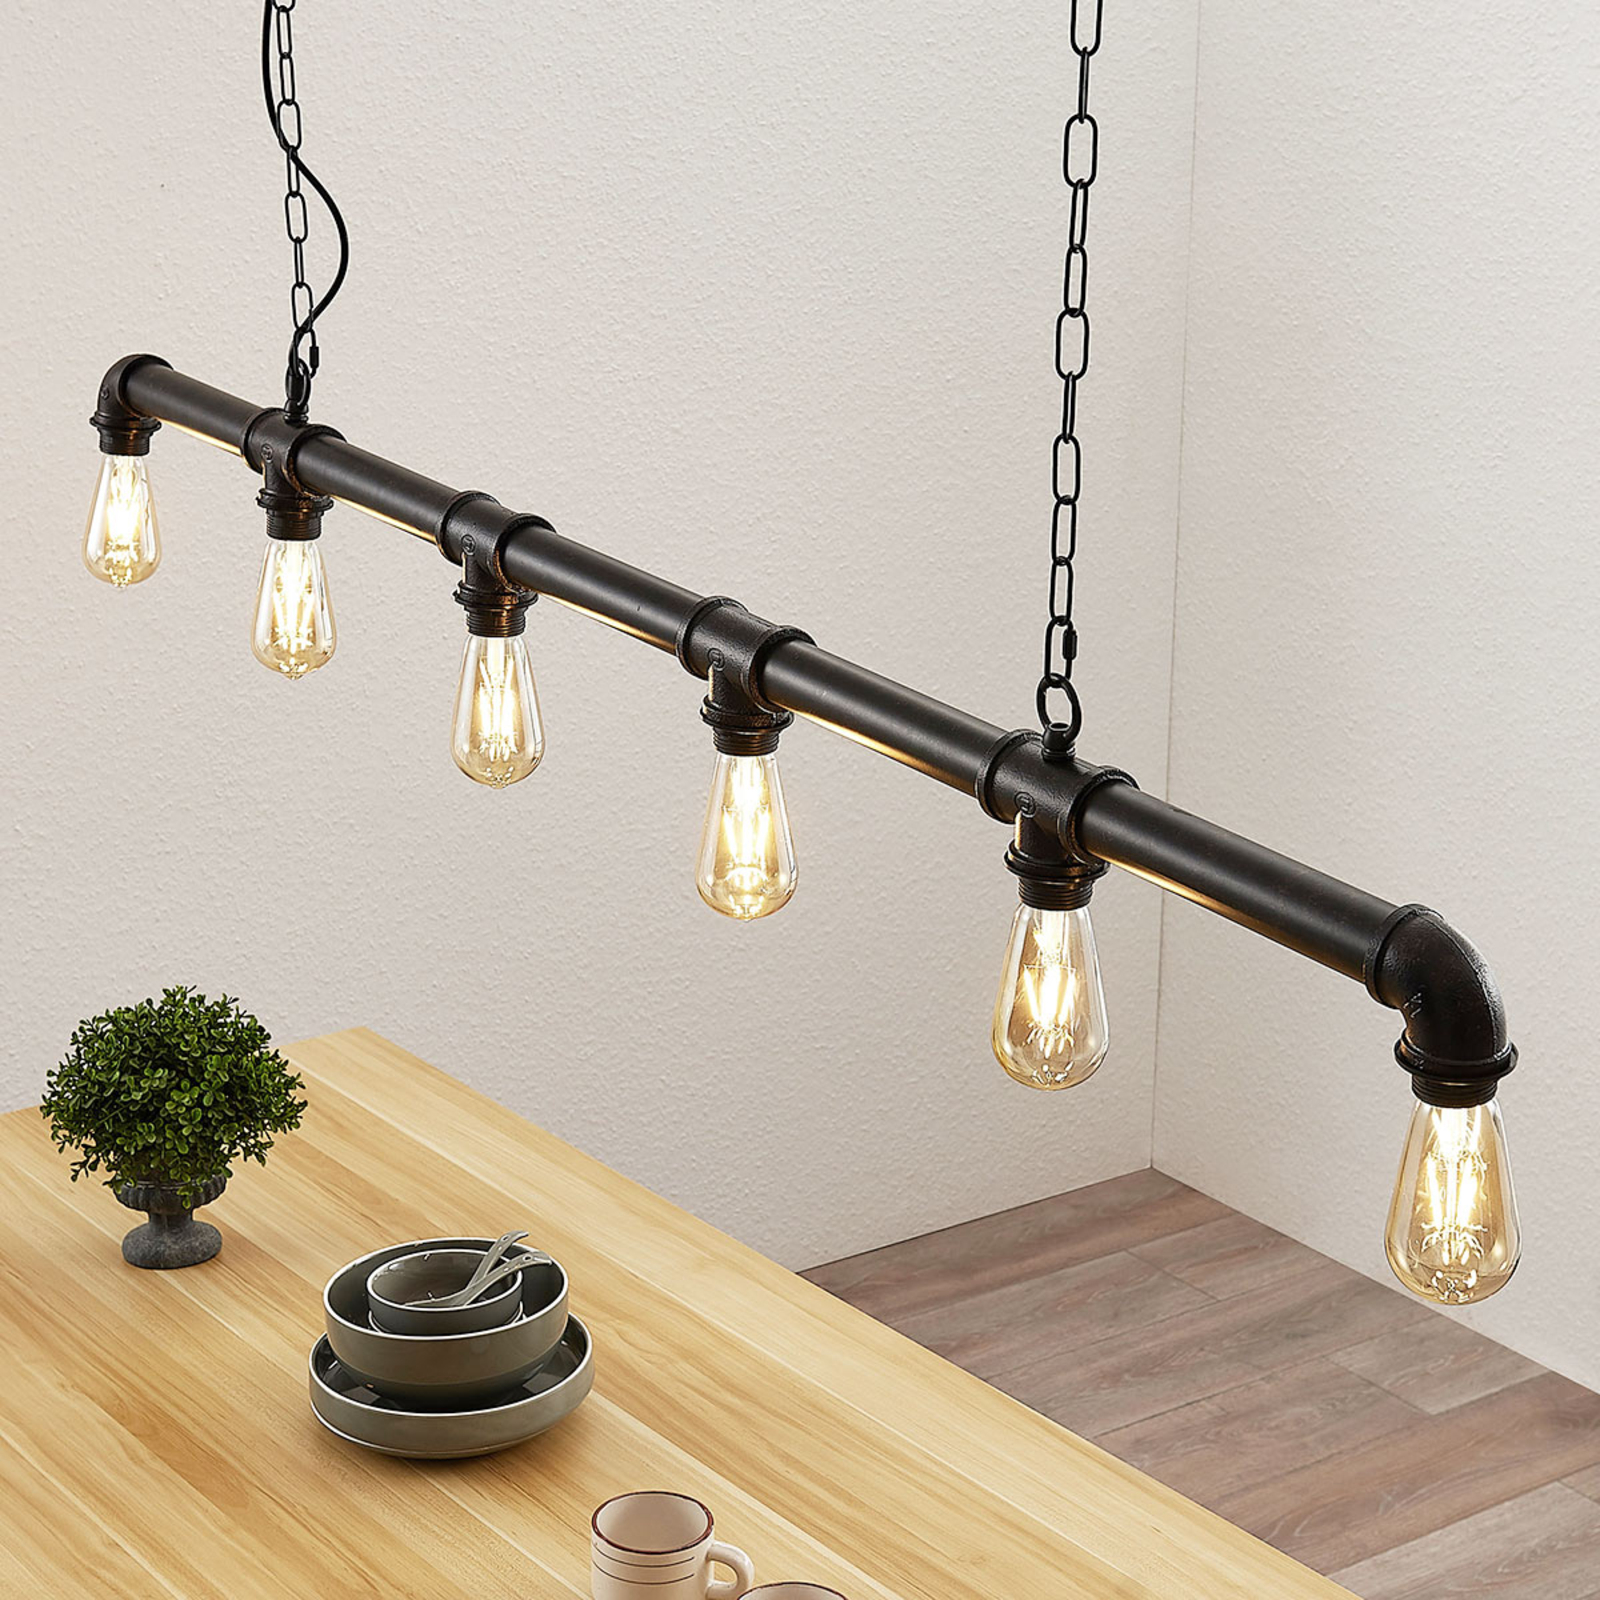 Gedeeltelijk Mona Lisa Voorloper Balk hanglamp Josip in industriële stijl | Lampen24.be